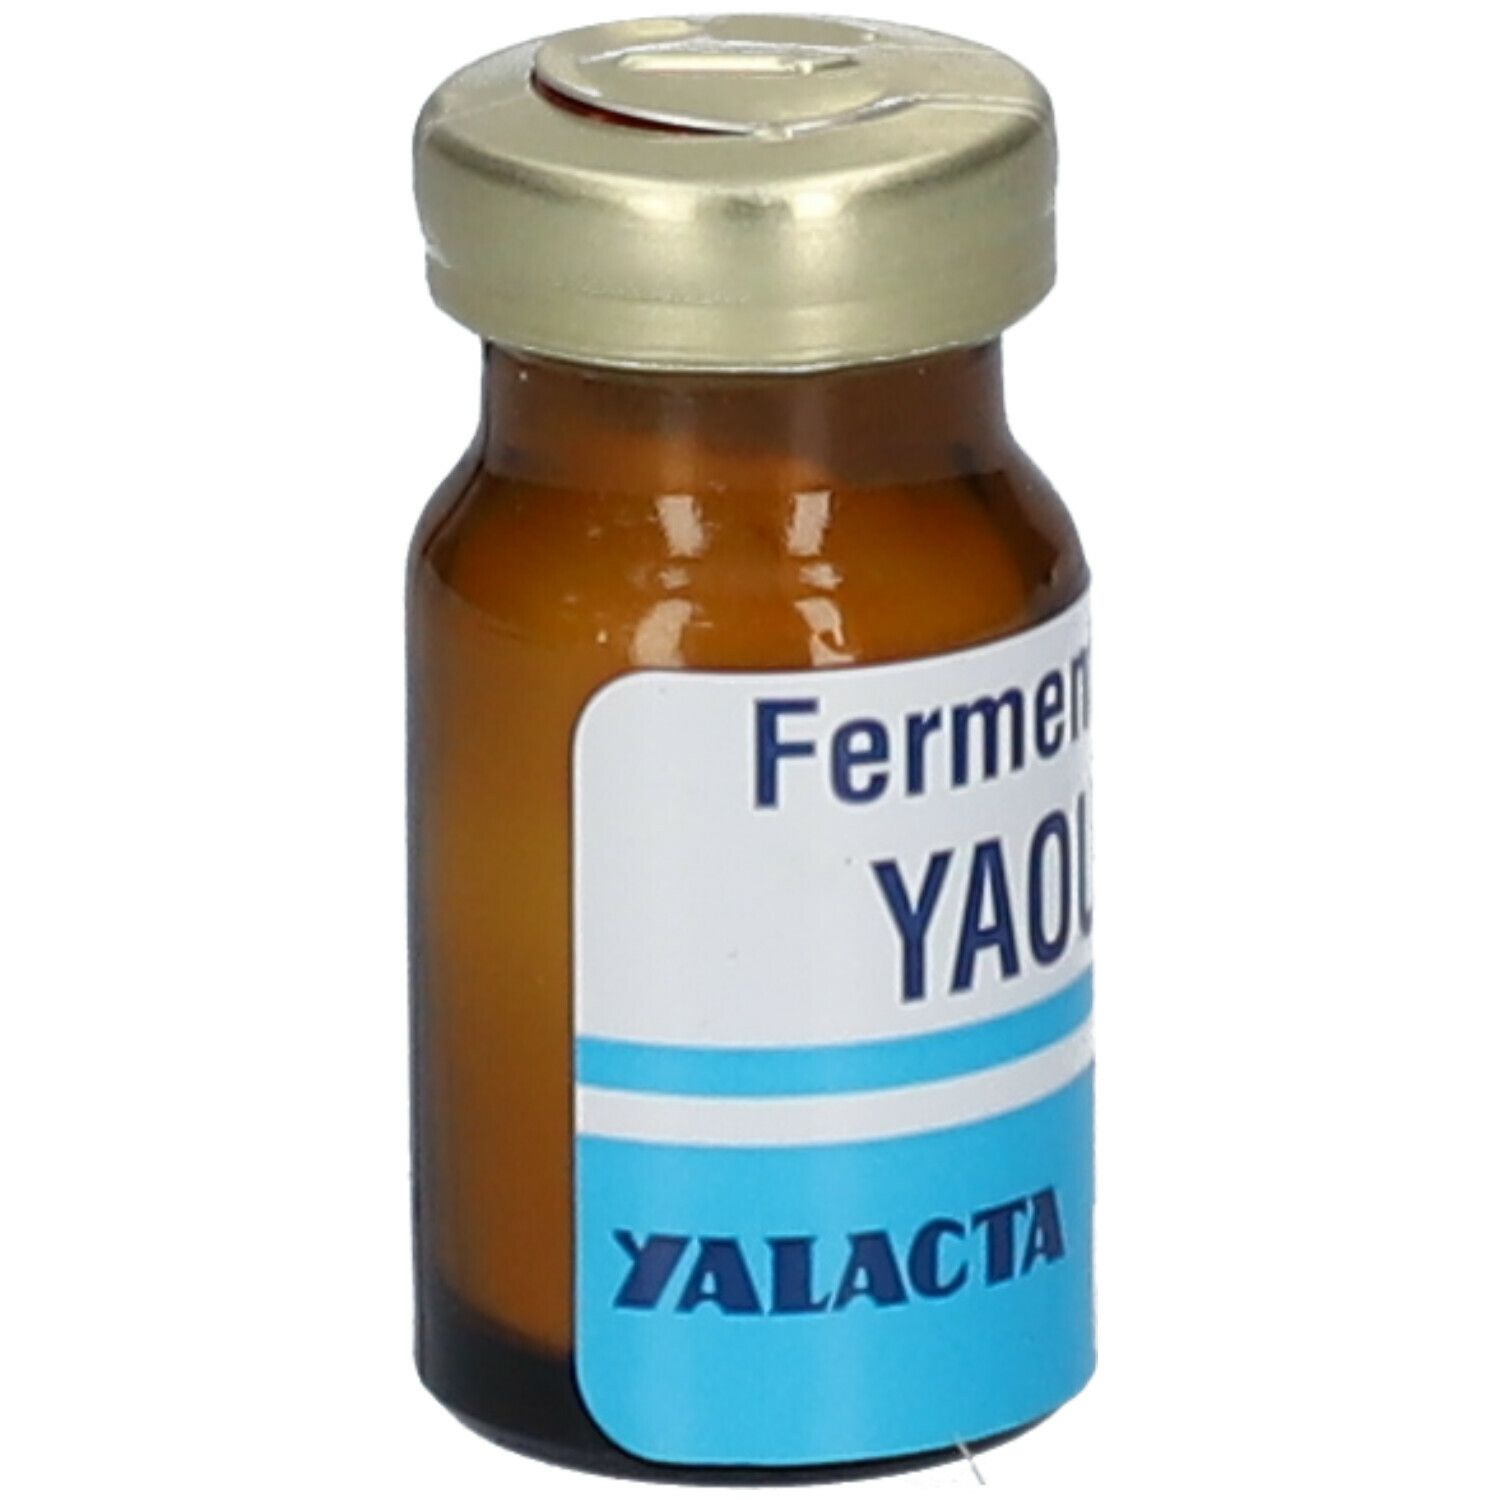 Yalacta Préparation de ferments pour yaourts Bio - Probiotiques